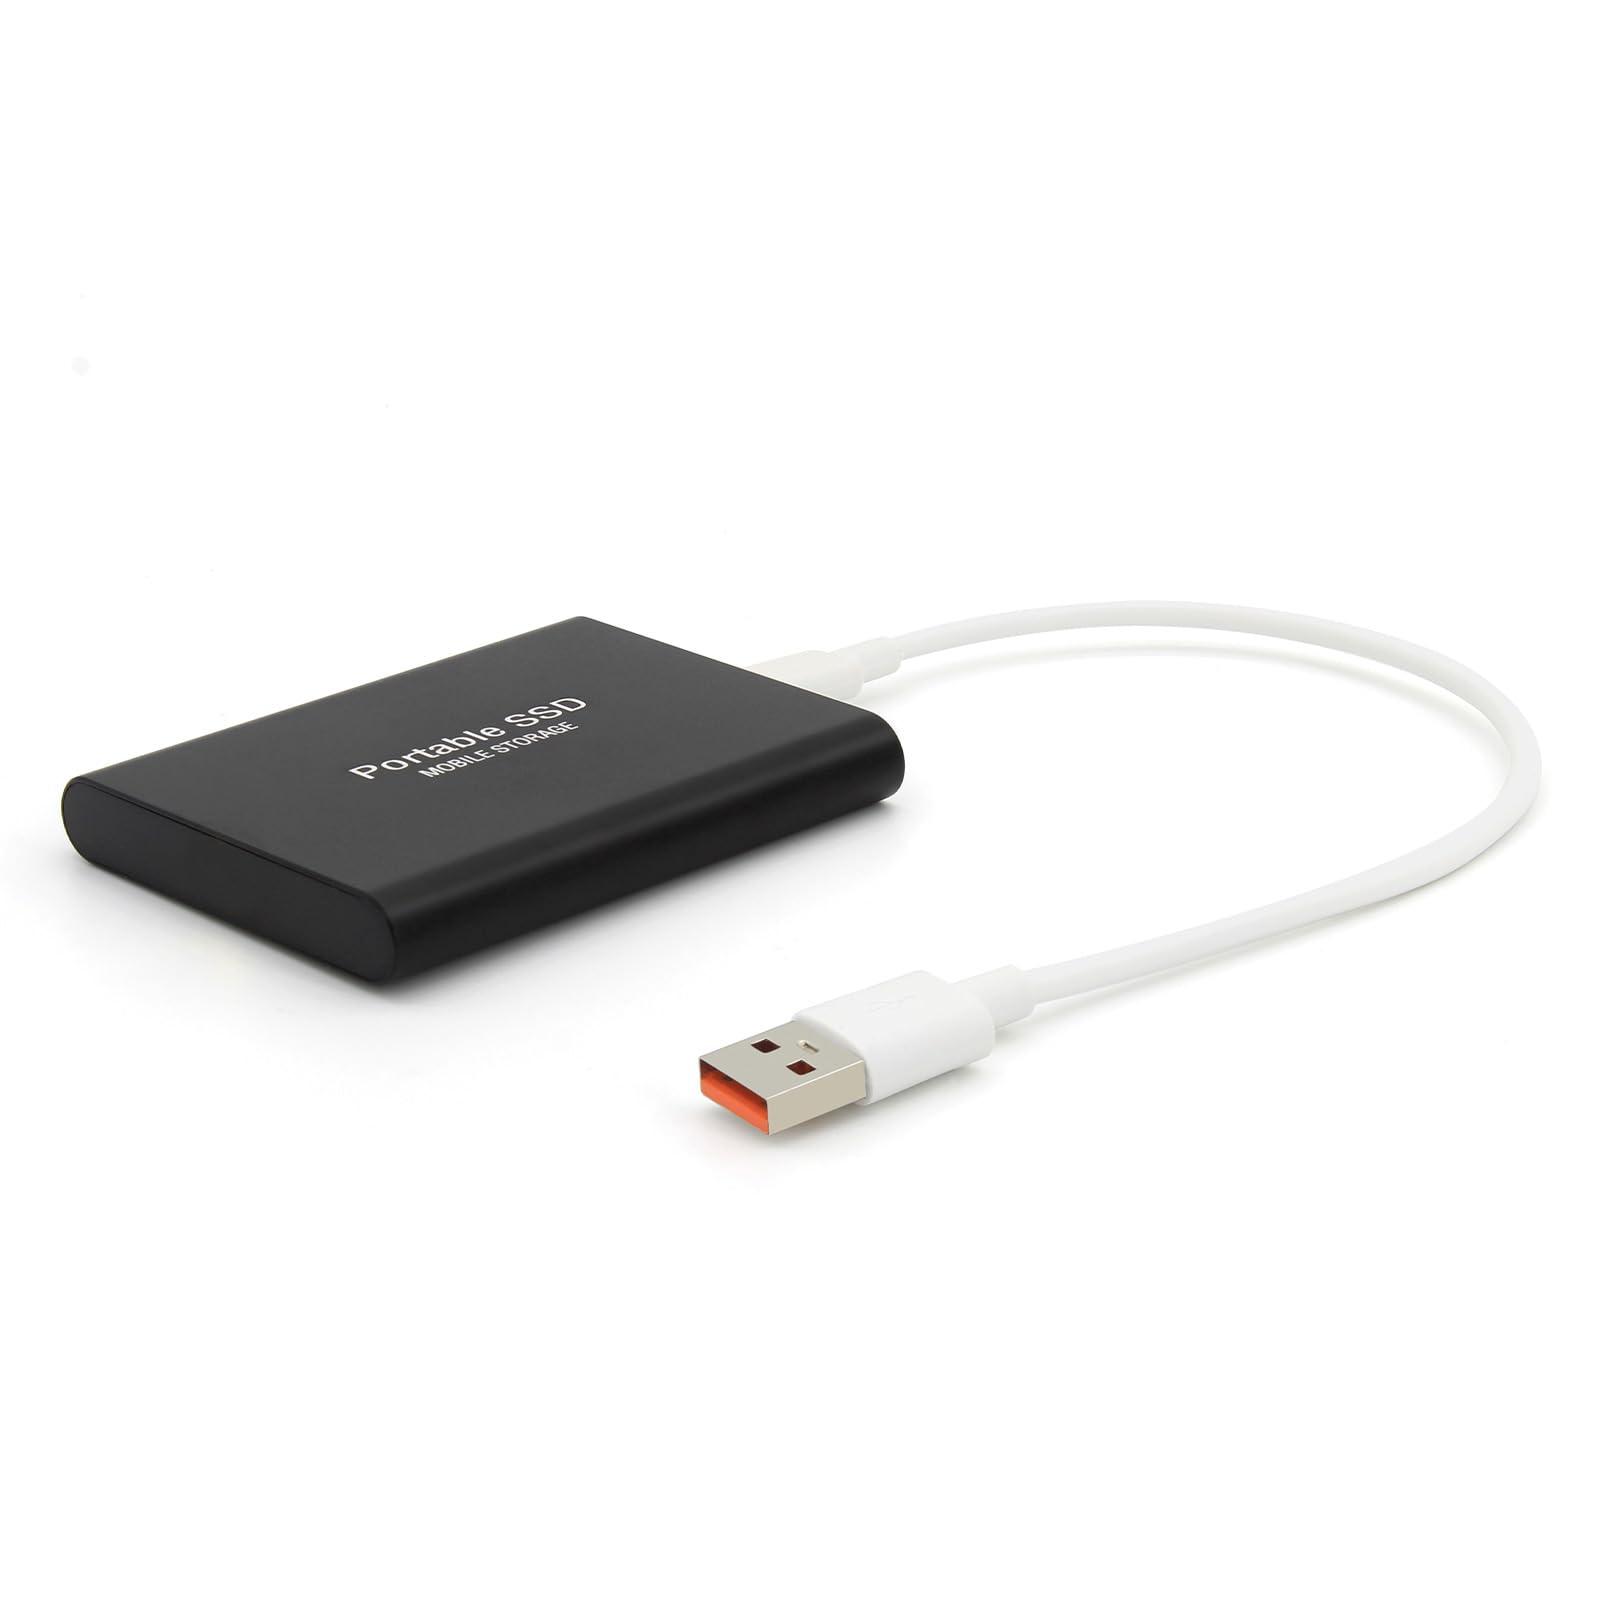 LINGKU External Hard Drive 2T Flash Drive USB Fast Transfer